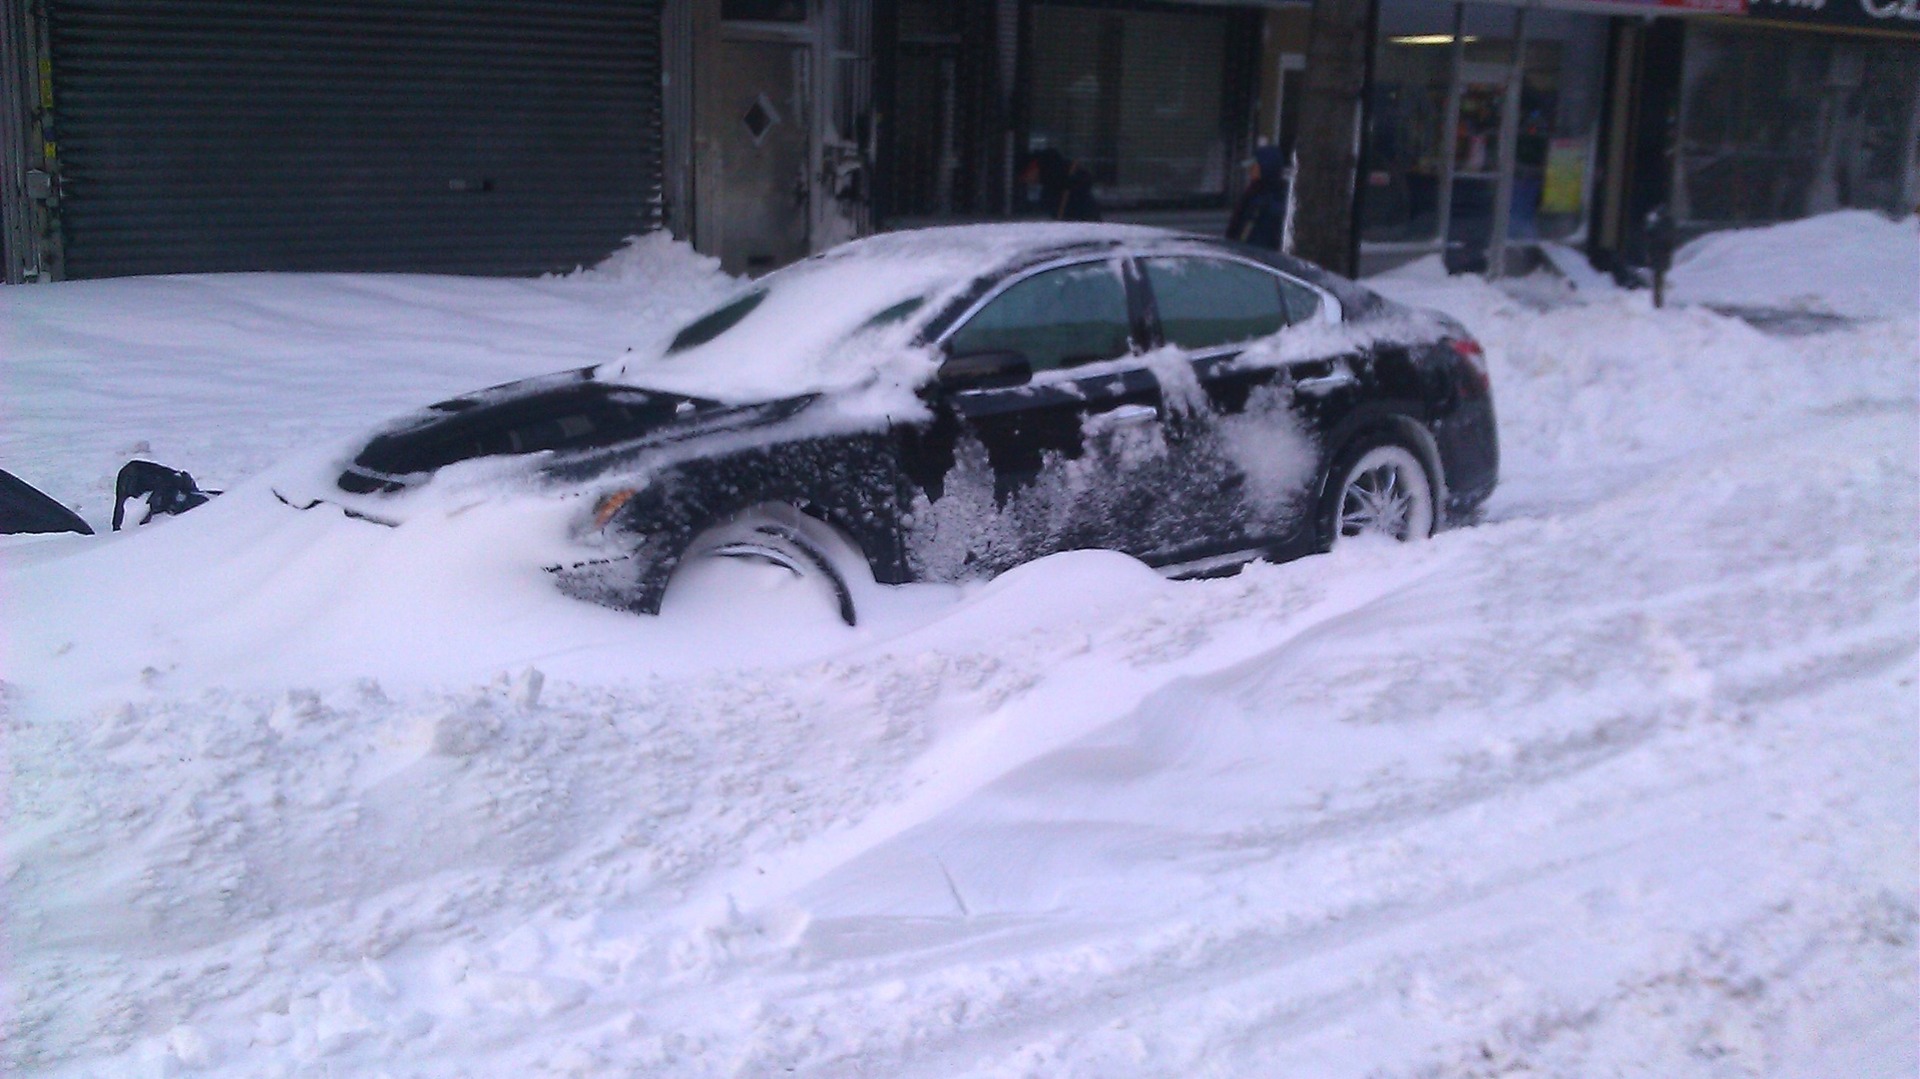 Въехал в сугроб. Машина застряла в снегу. Машина в сугробе. Машина зимой. Машина застряла в сугробе.